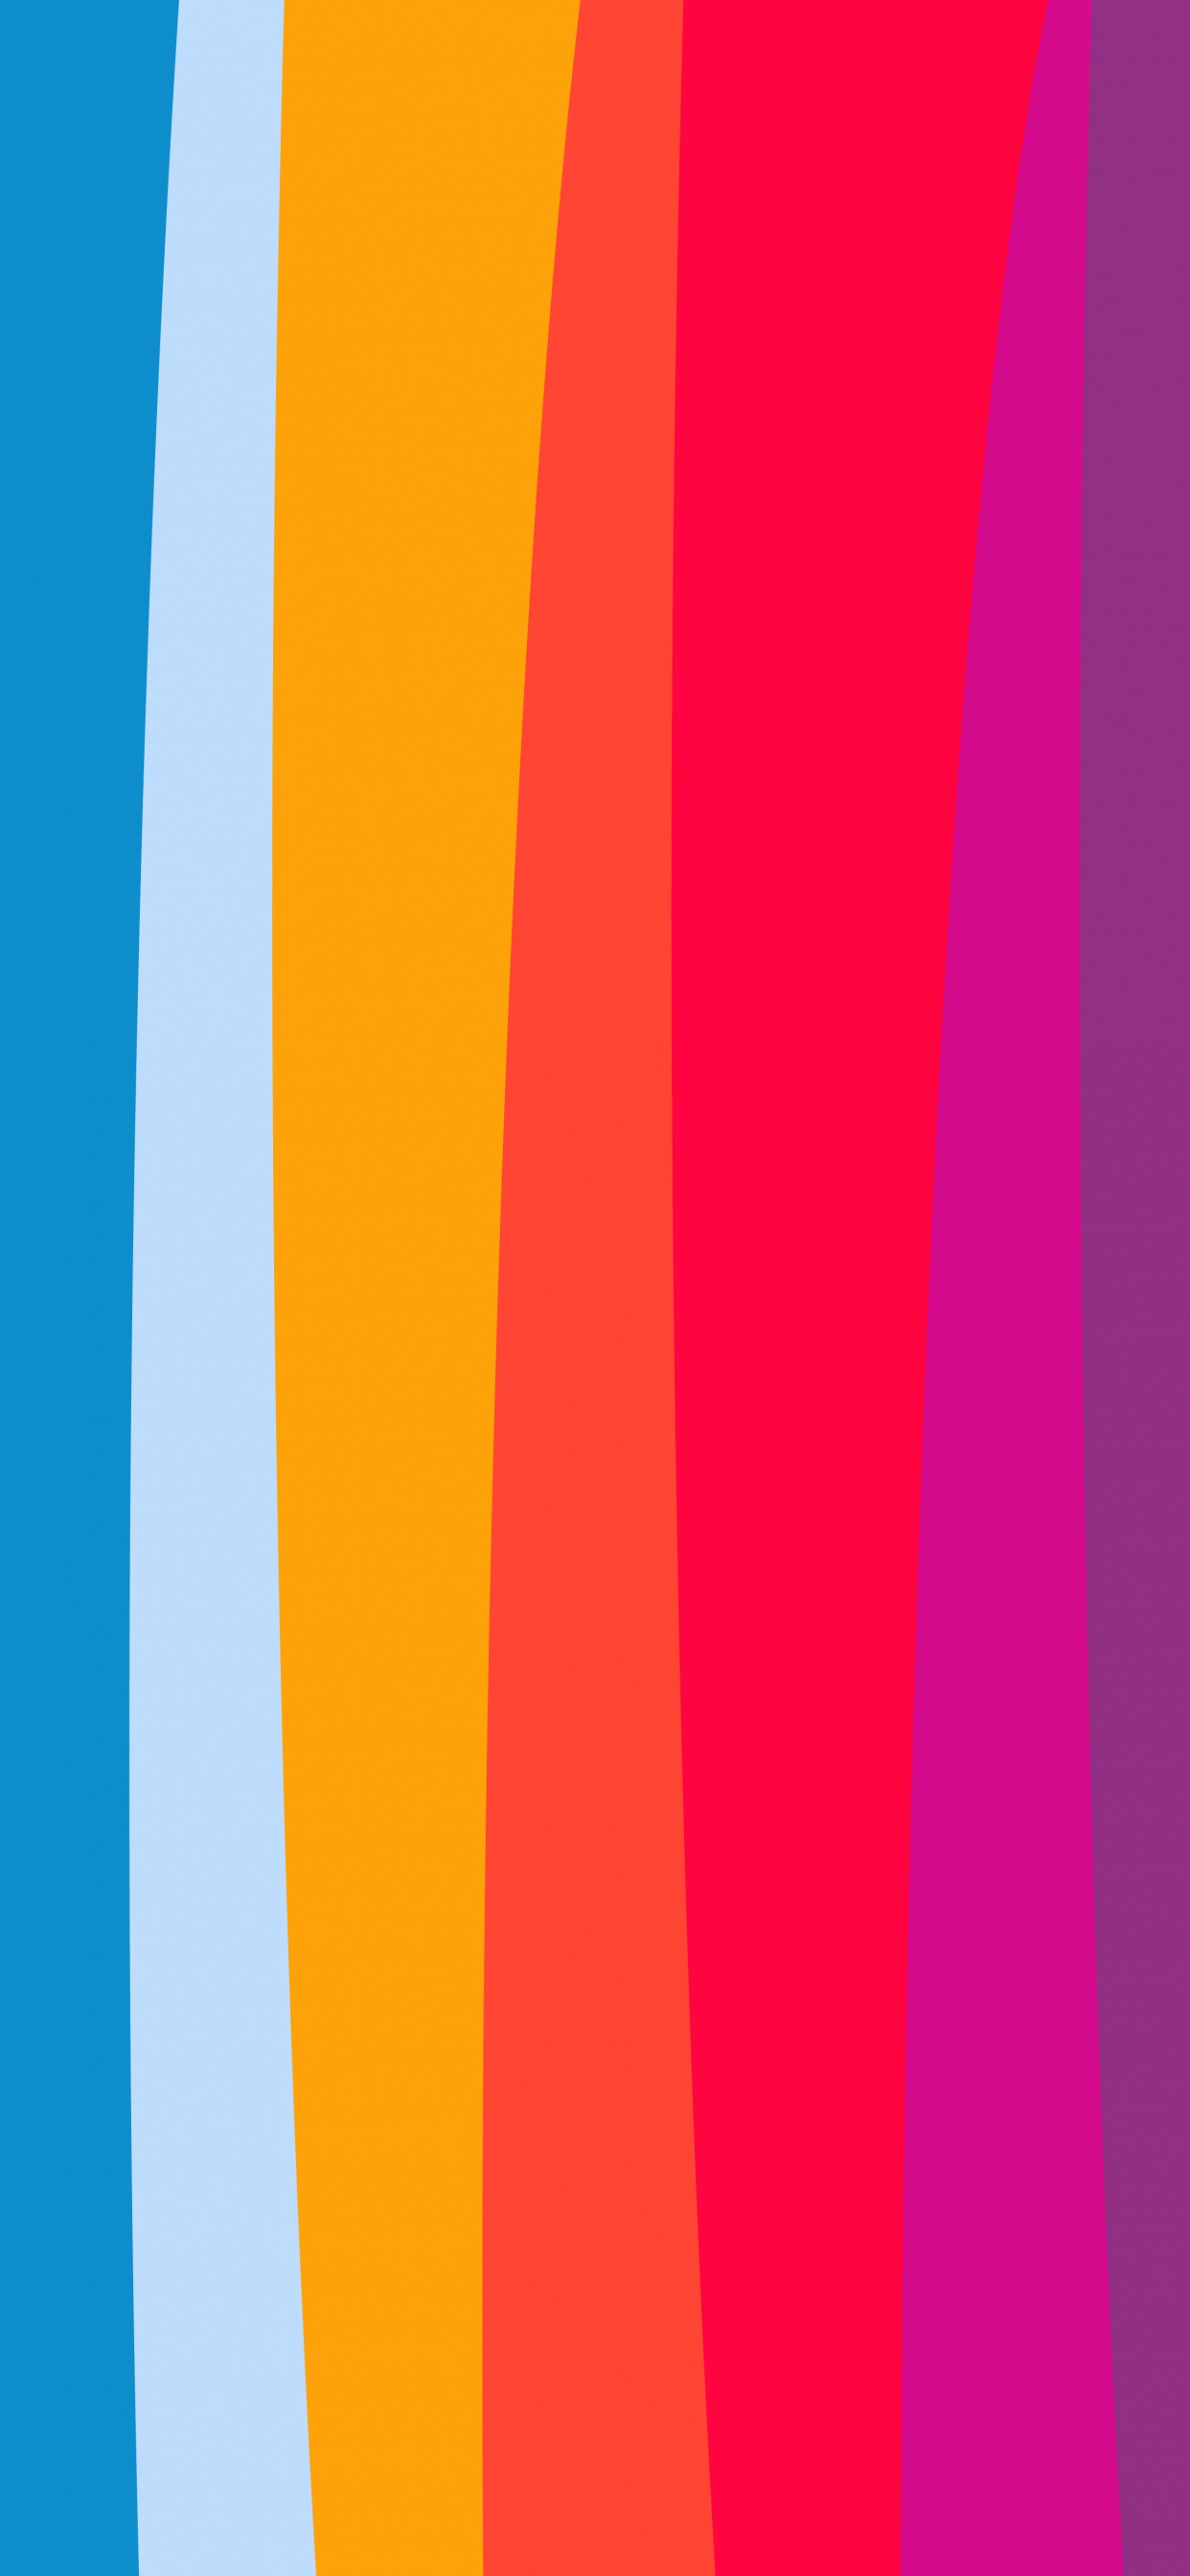 Orange, Äpfeln, Farbigkeit, Blau, Purpur. Wallpaper in 1242x2688 Resolution